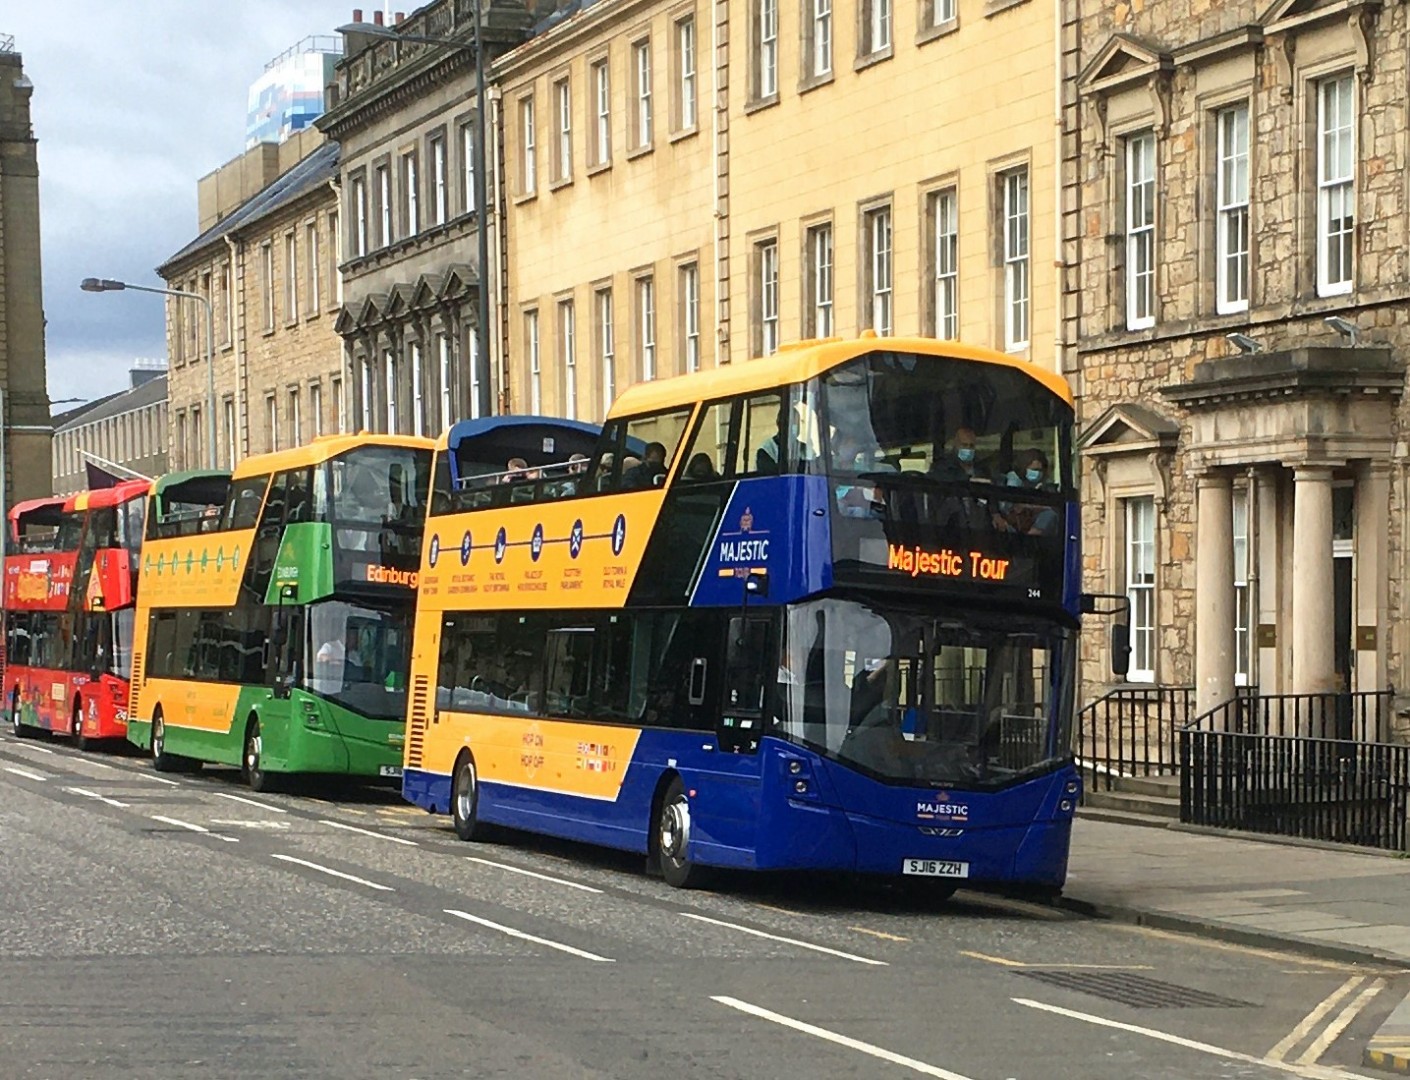 bus tour around edinburgh